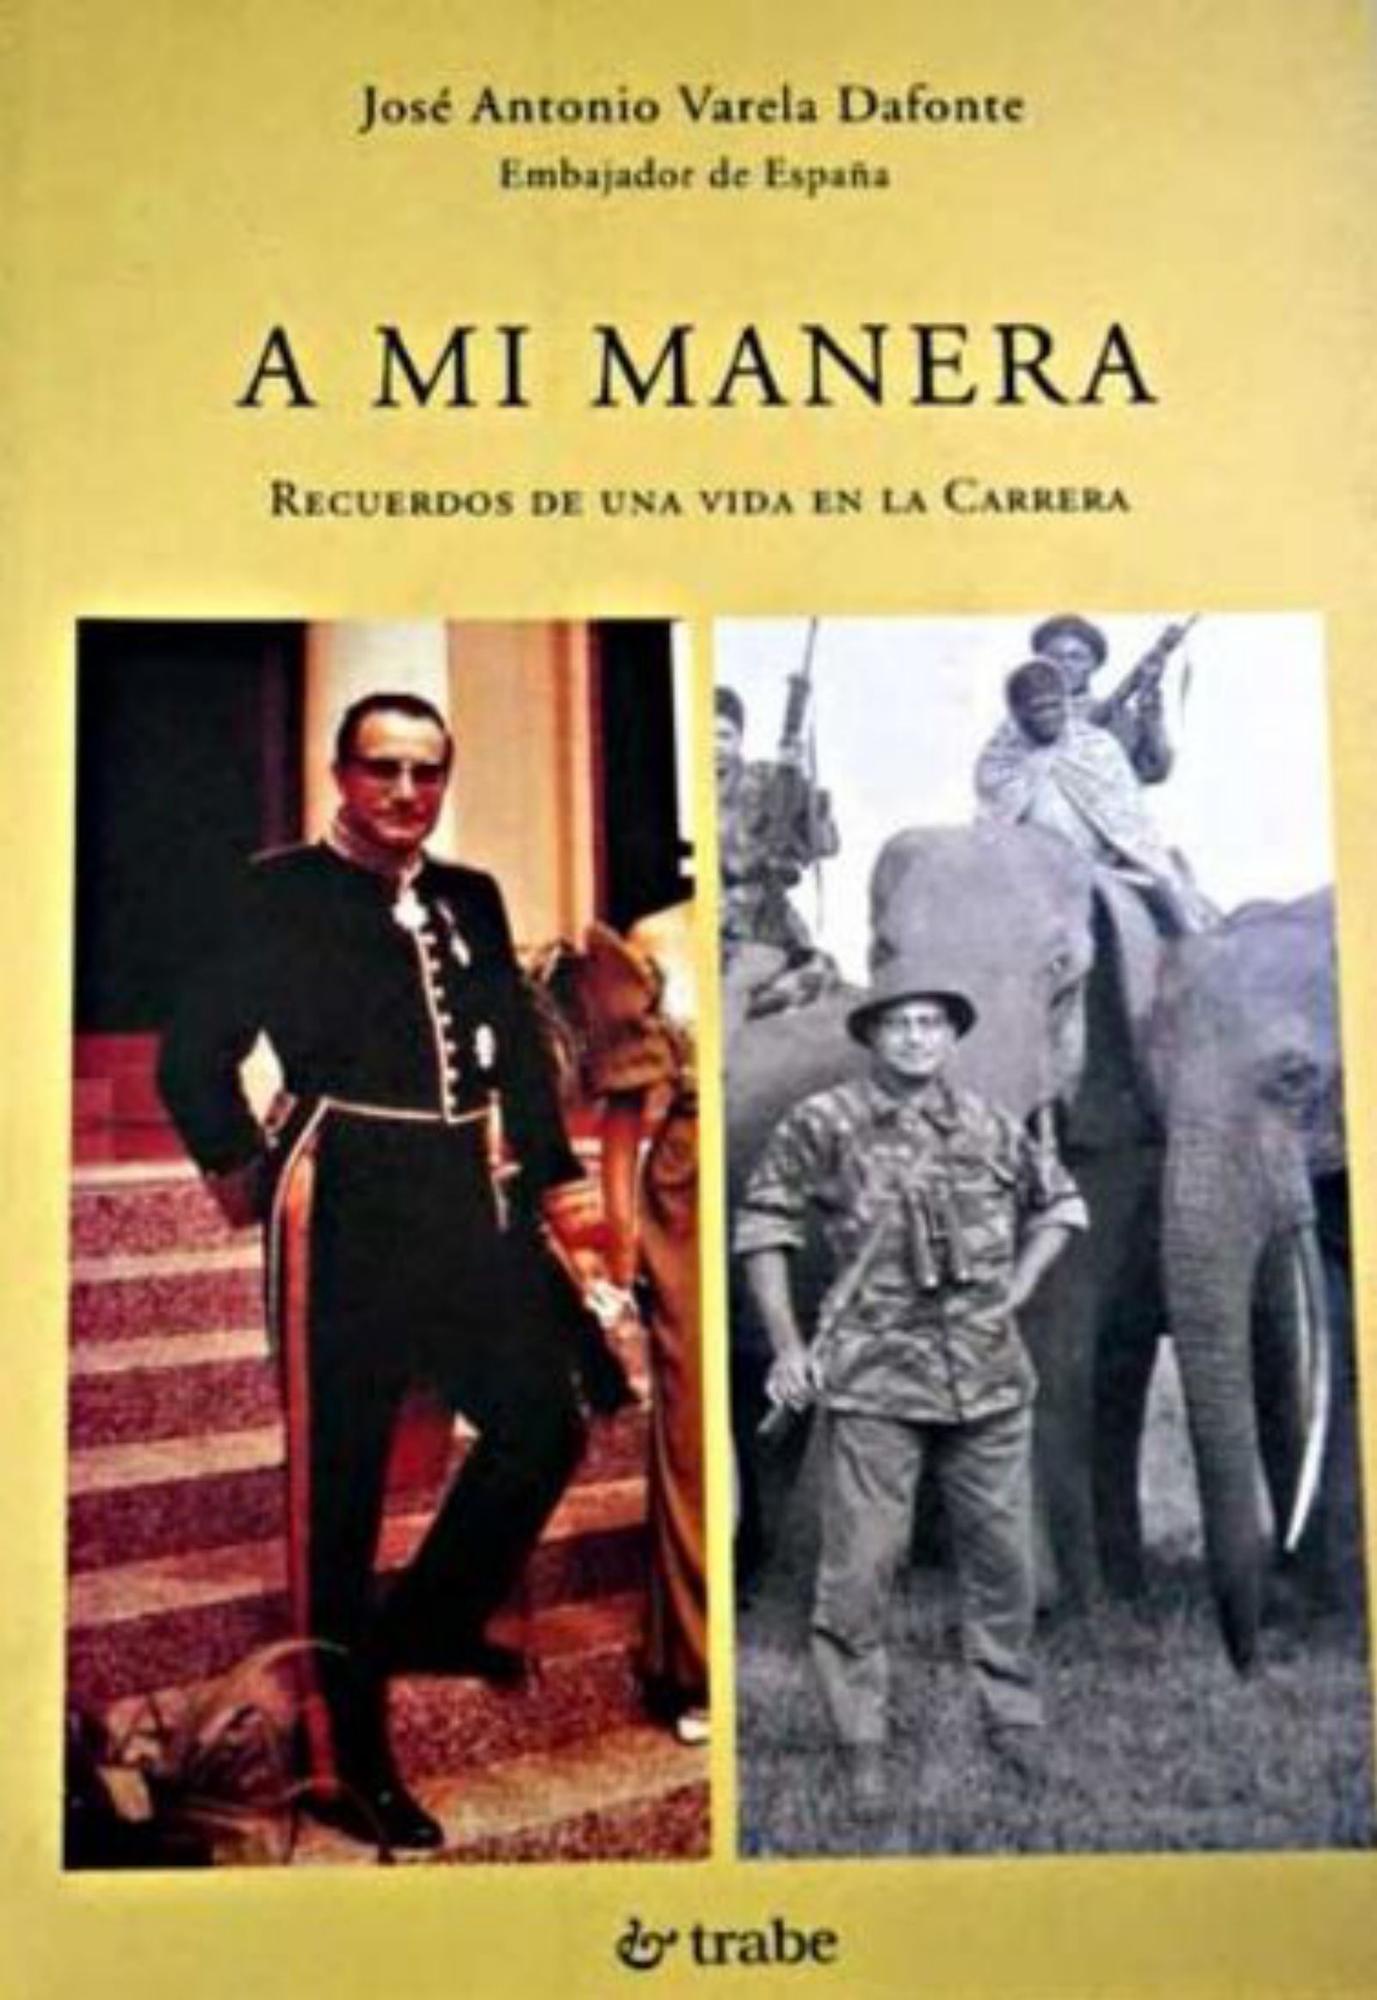 Libro de memorias del lucense José Antonio Varela Dafonte